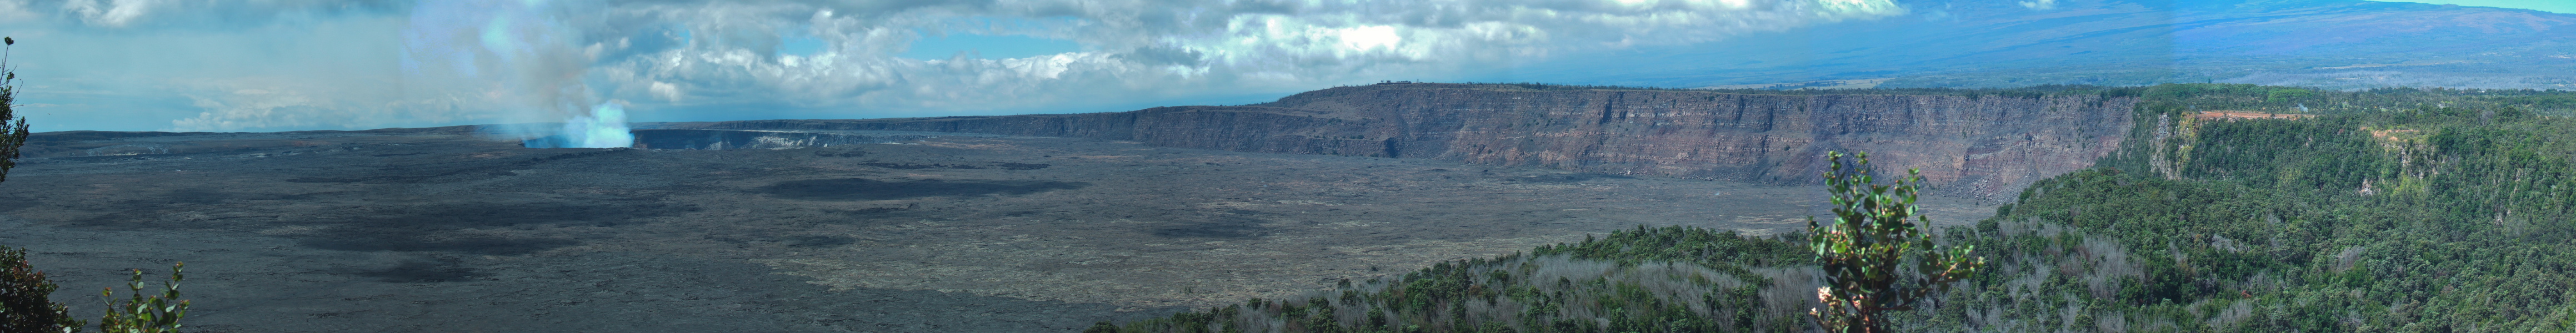 Kilauea Panorama